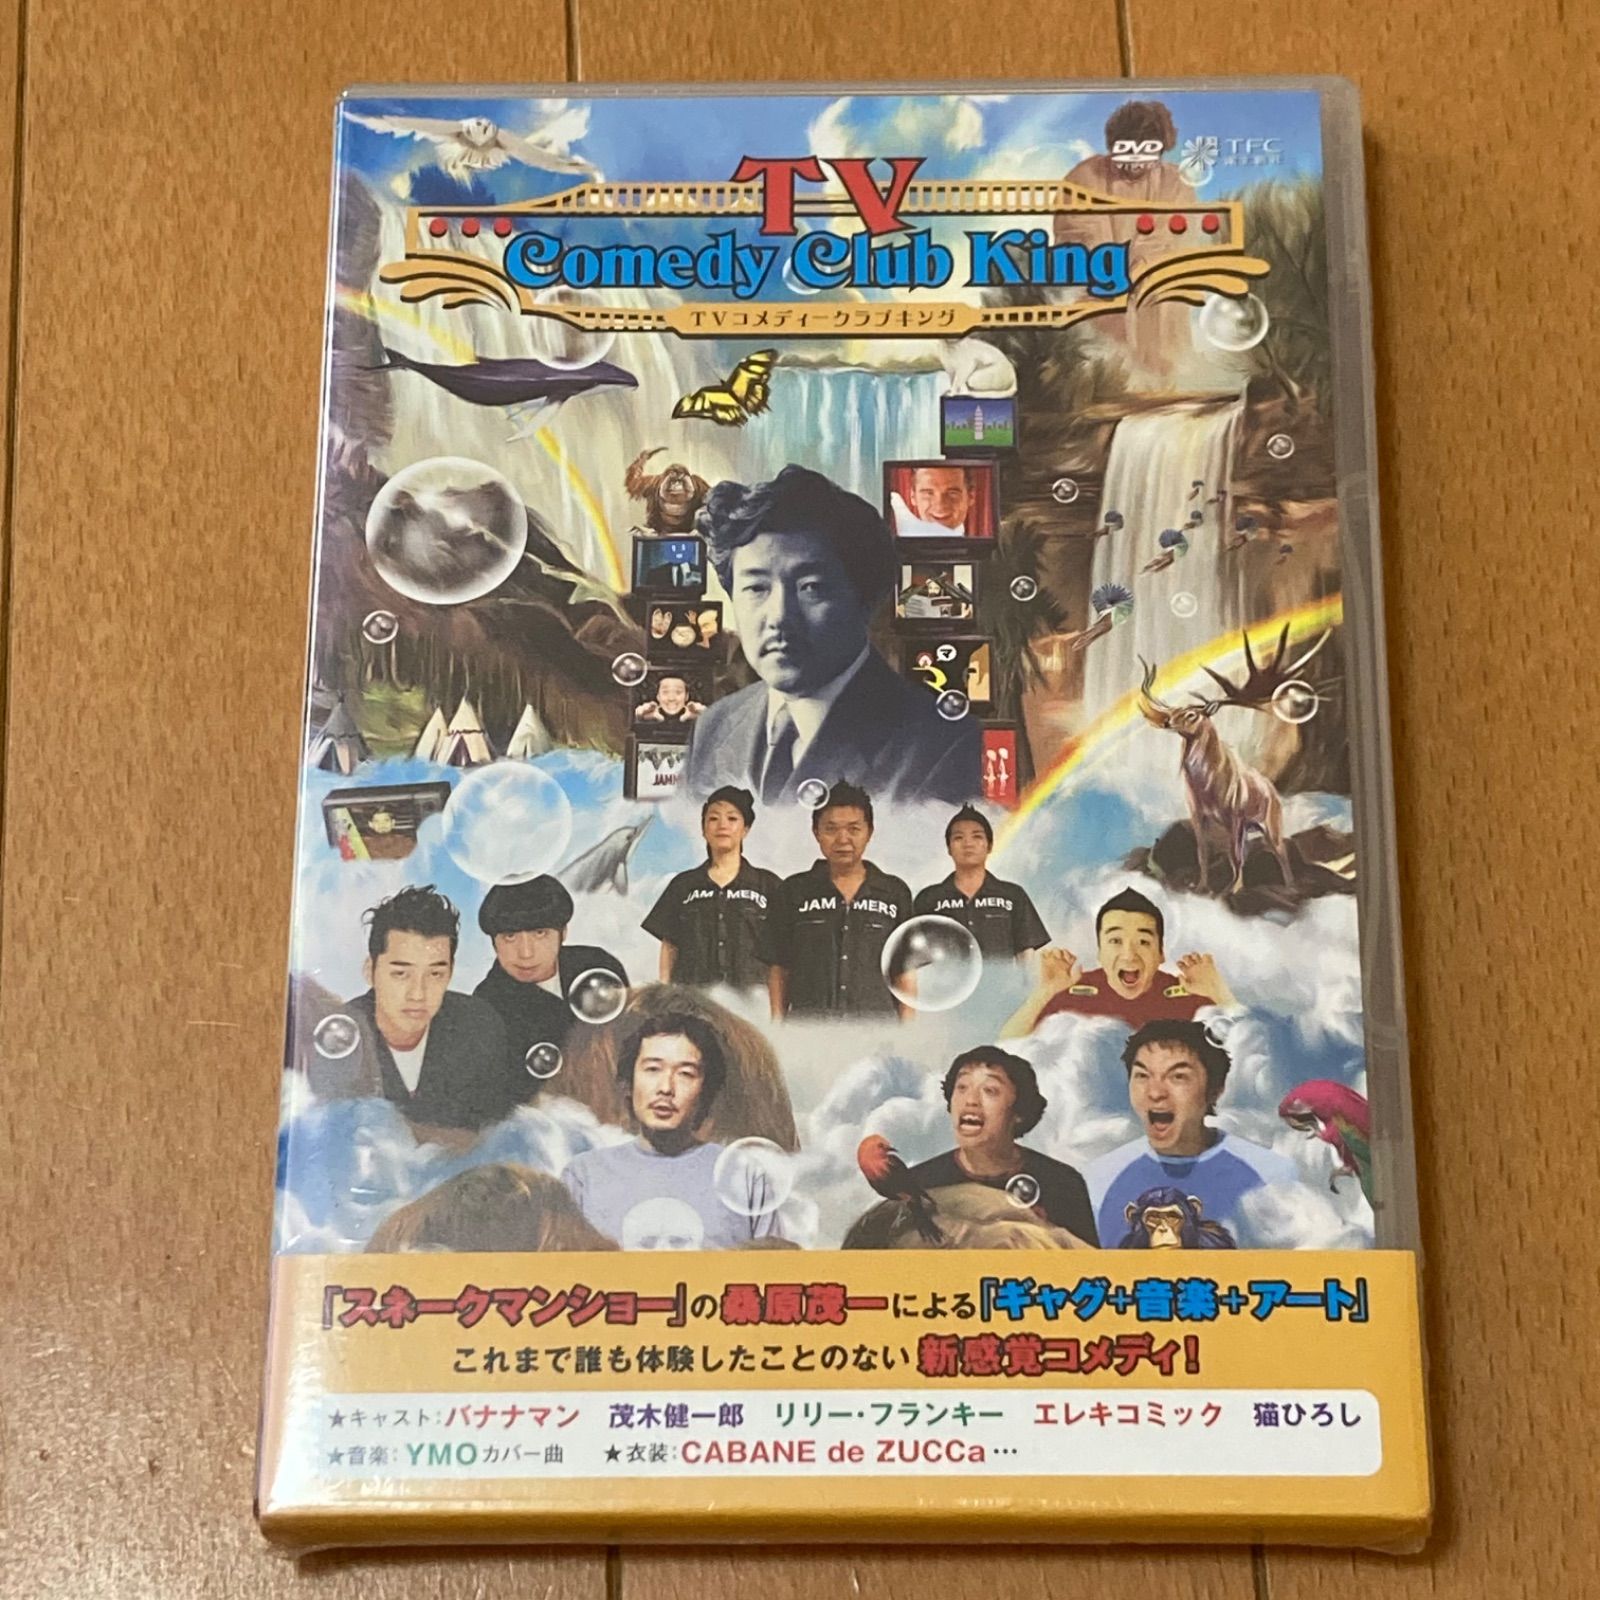 TVコメディークラブキング [DVD]( 未使用品)　(shin